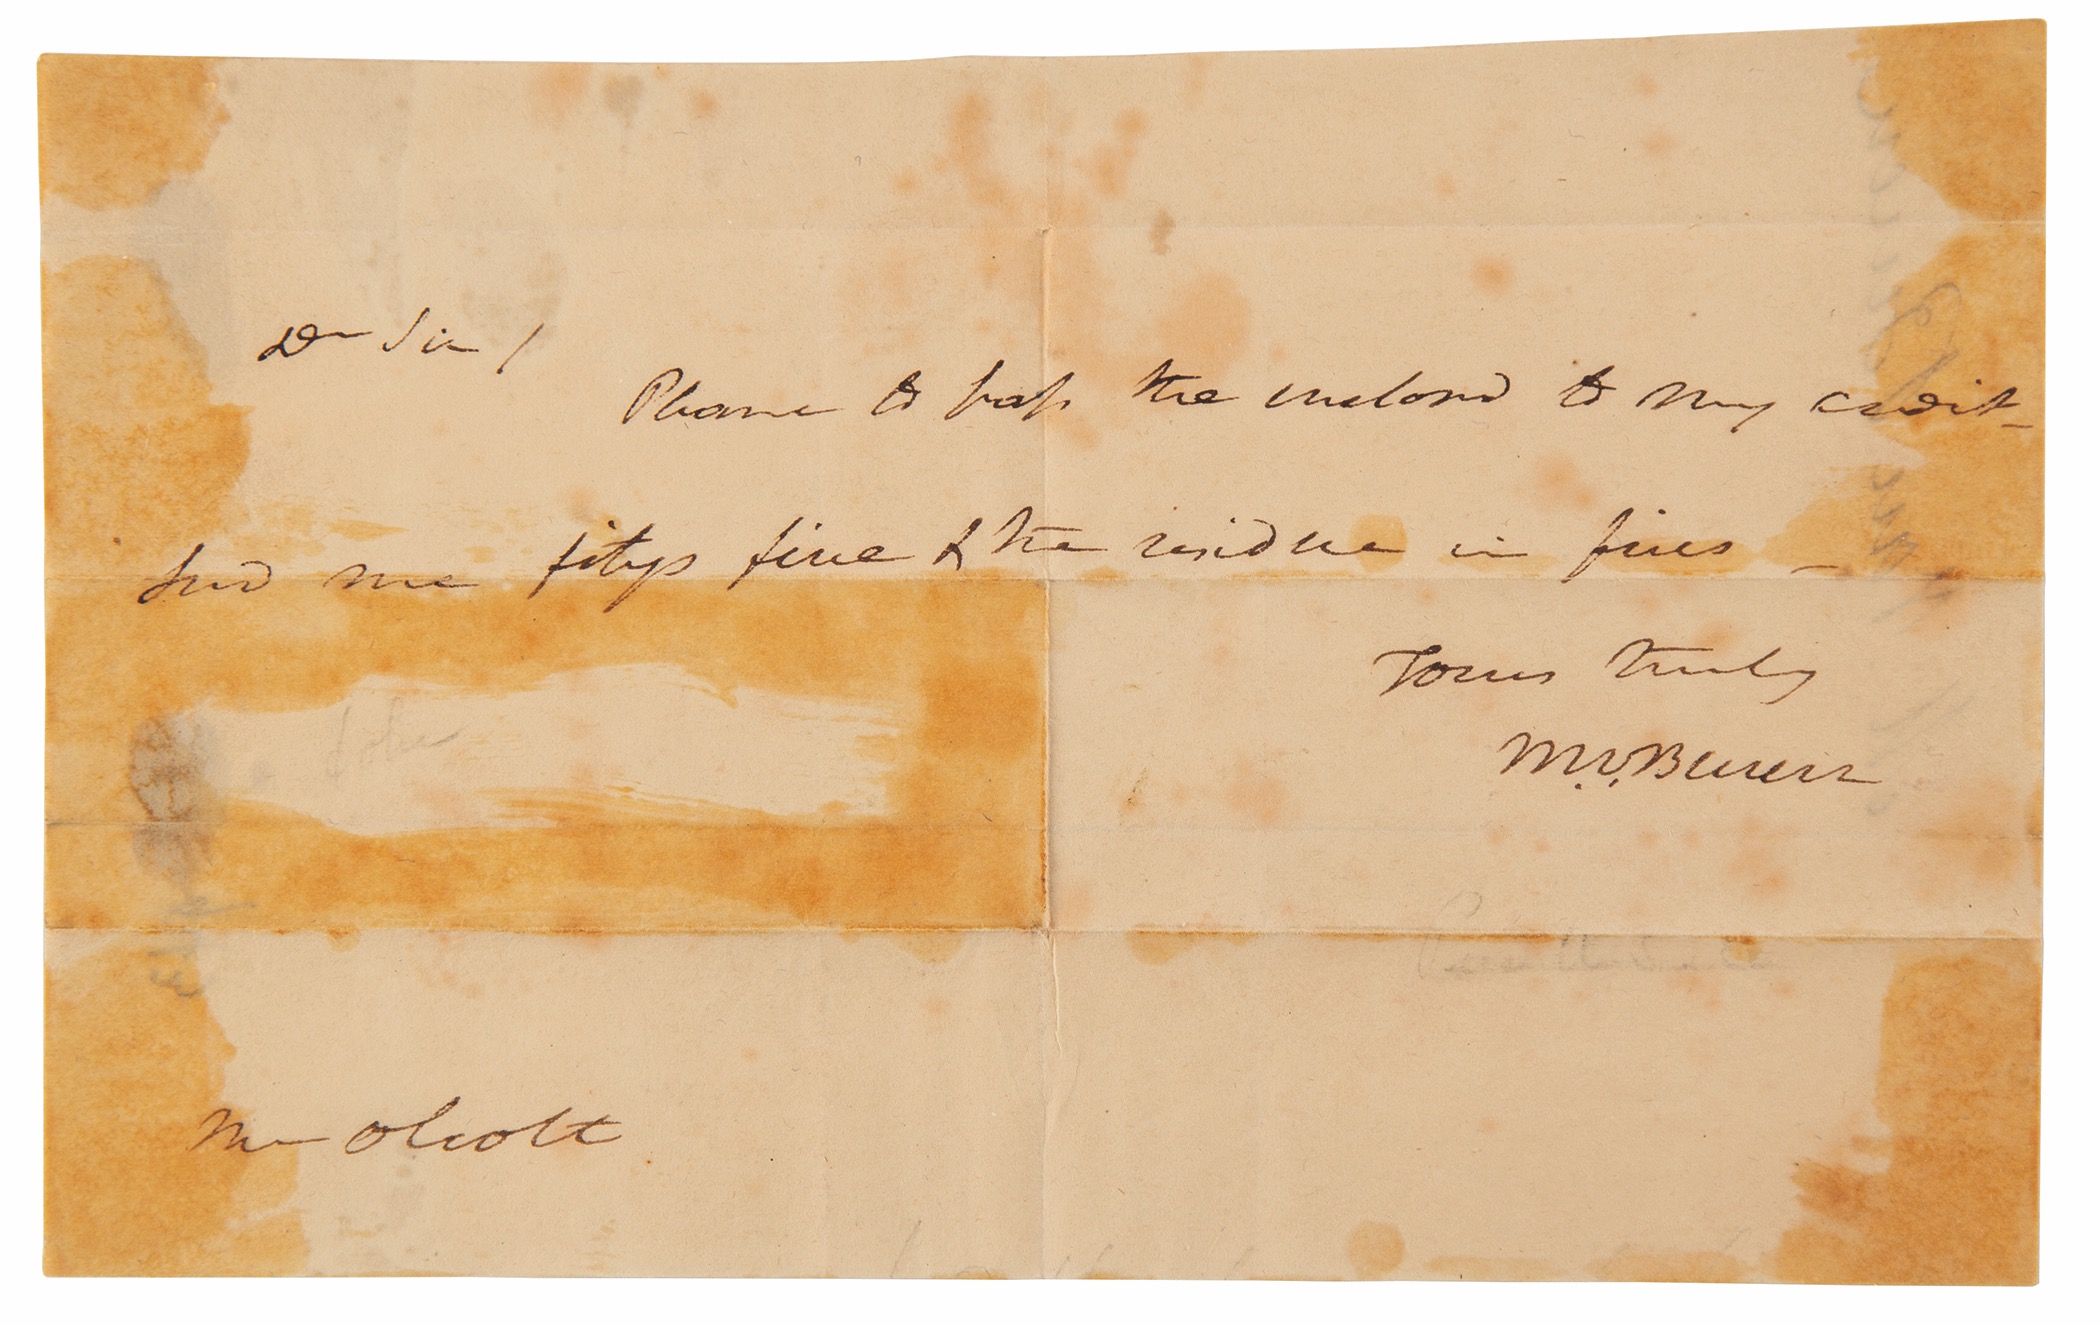 Lot #106 Martin Van Buren Autograph Letter Signed - Image 1